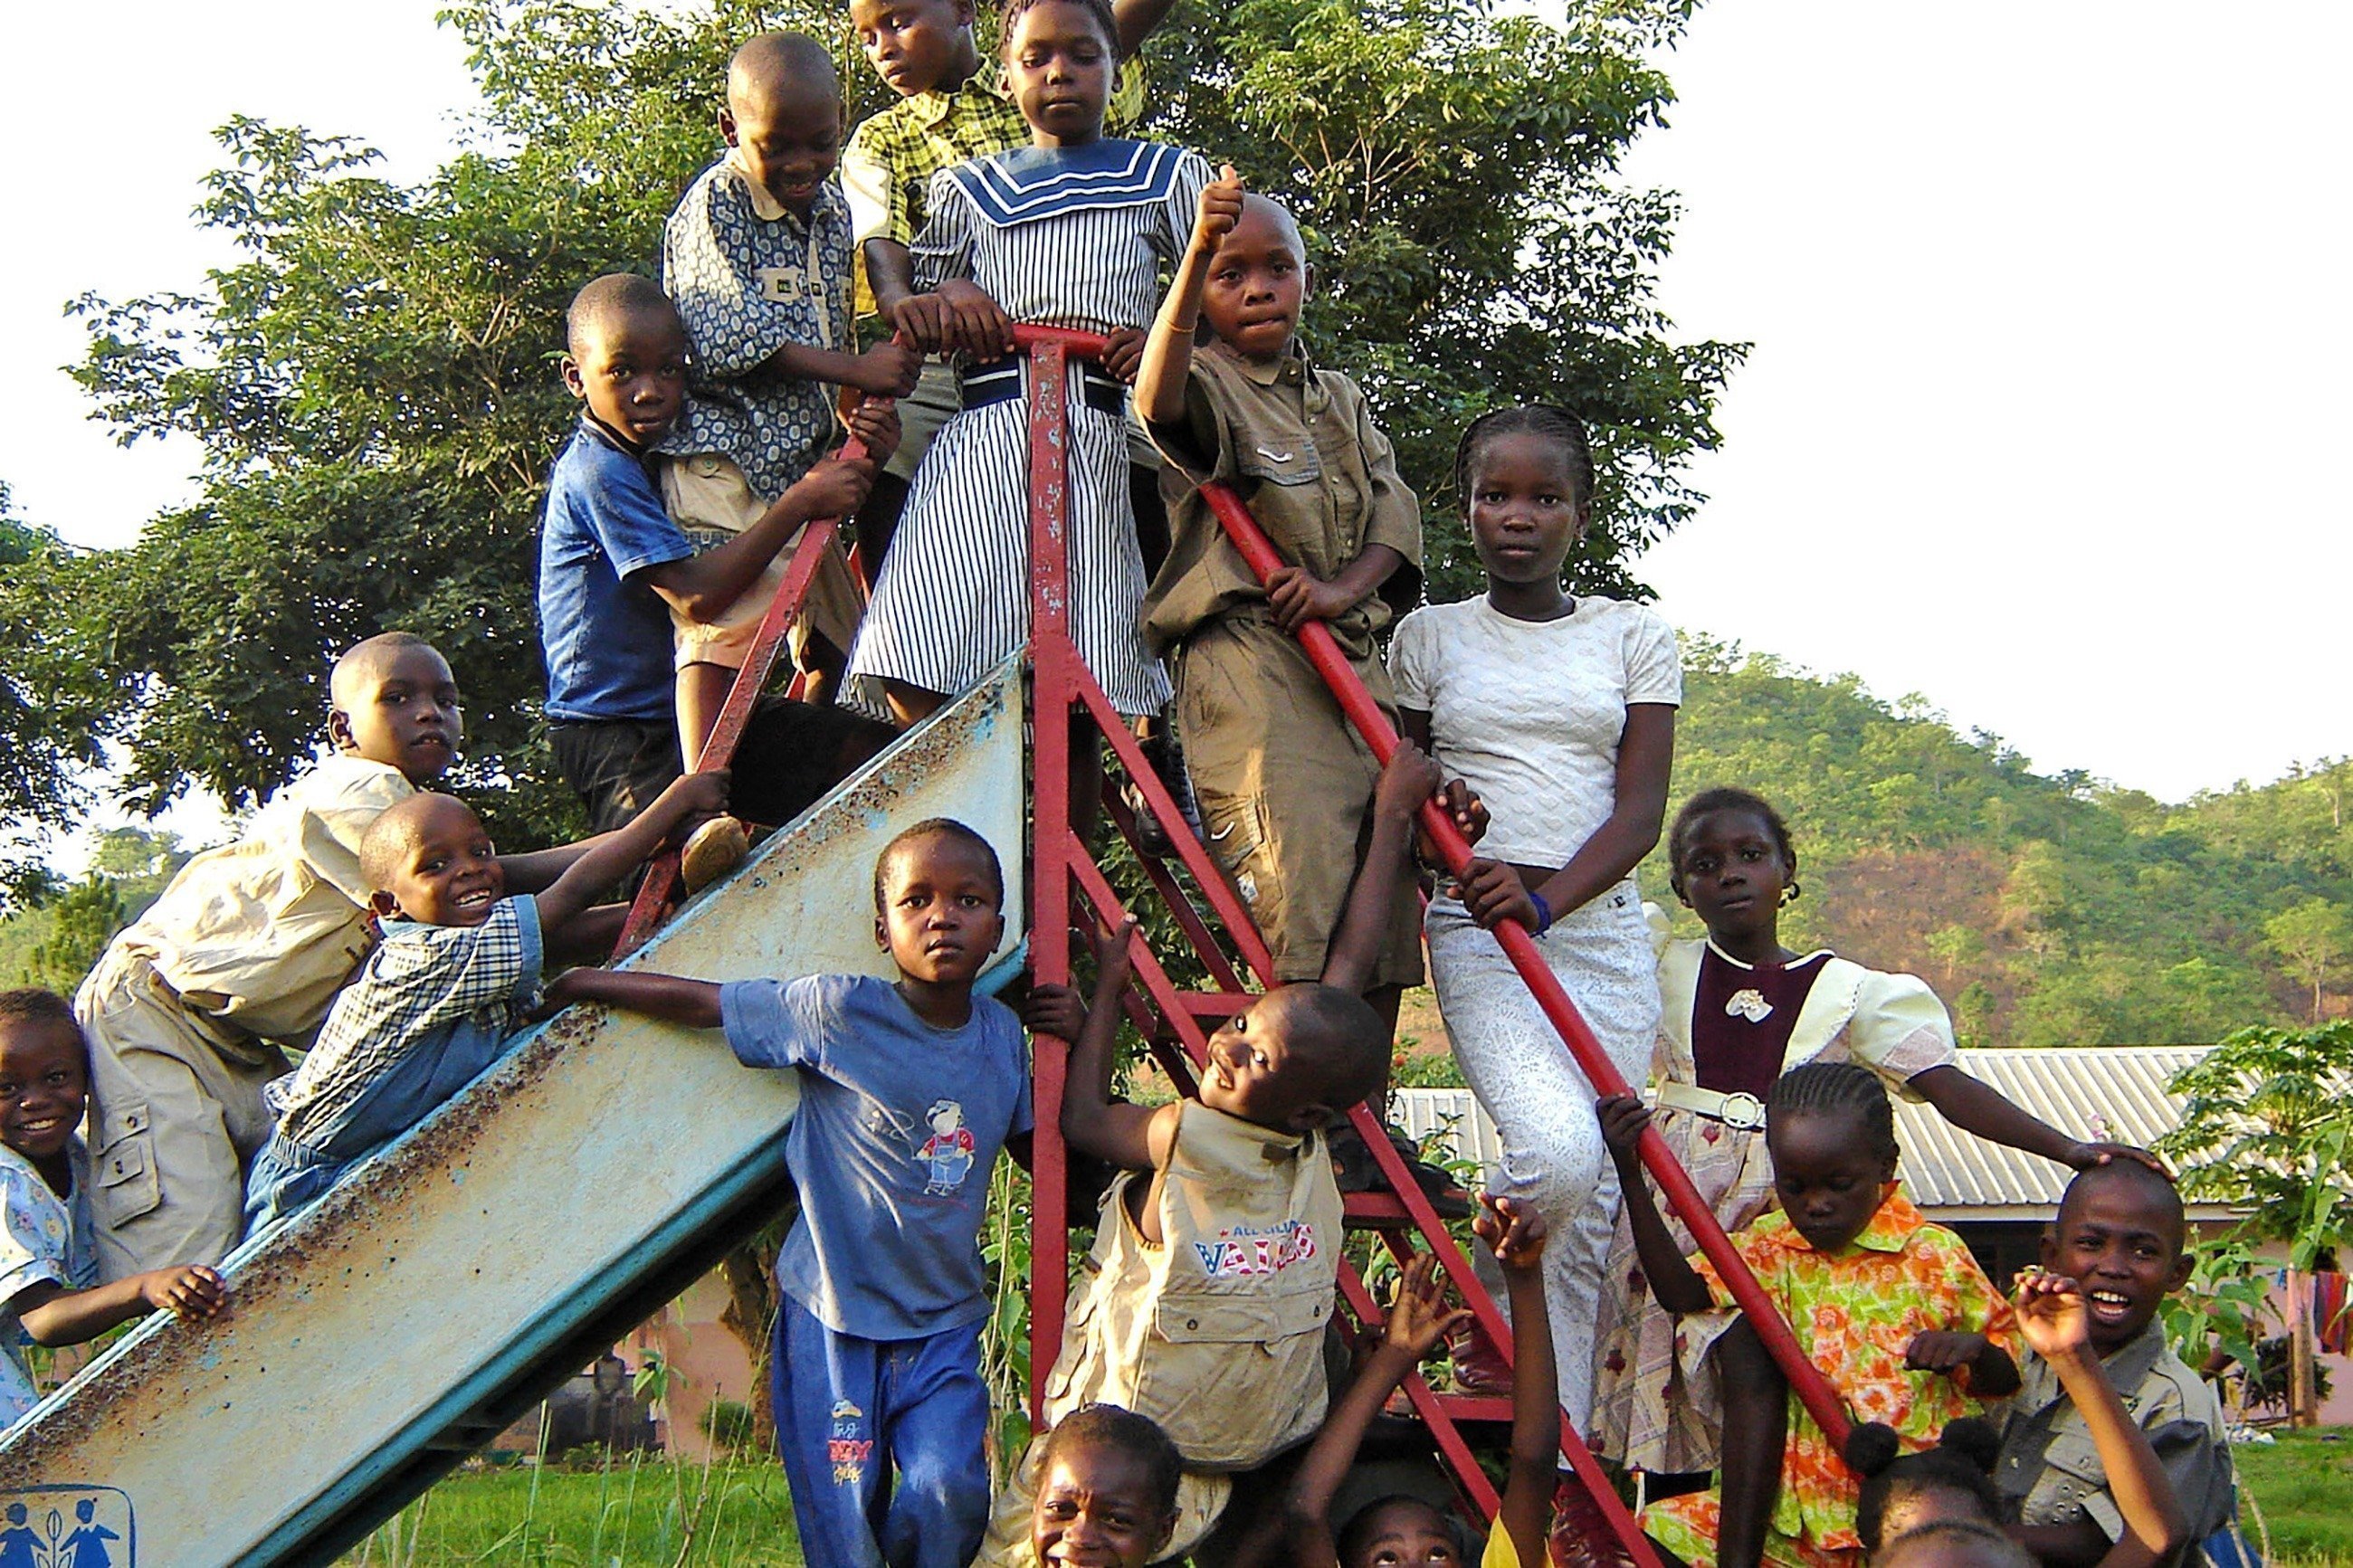 Gruppo di bambini sul bordo di uno scivolo.